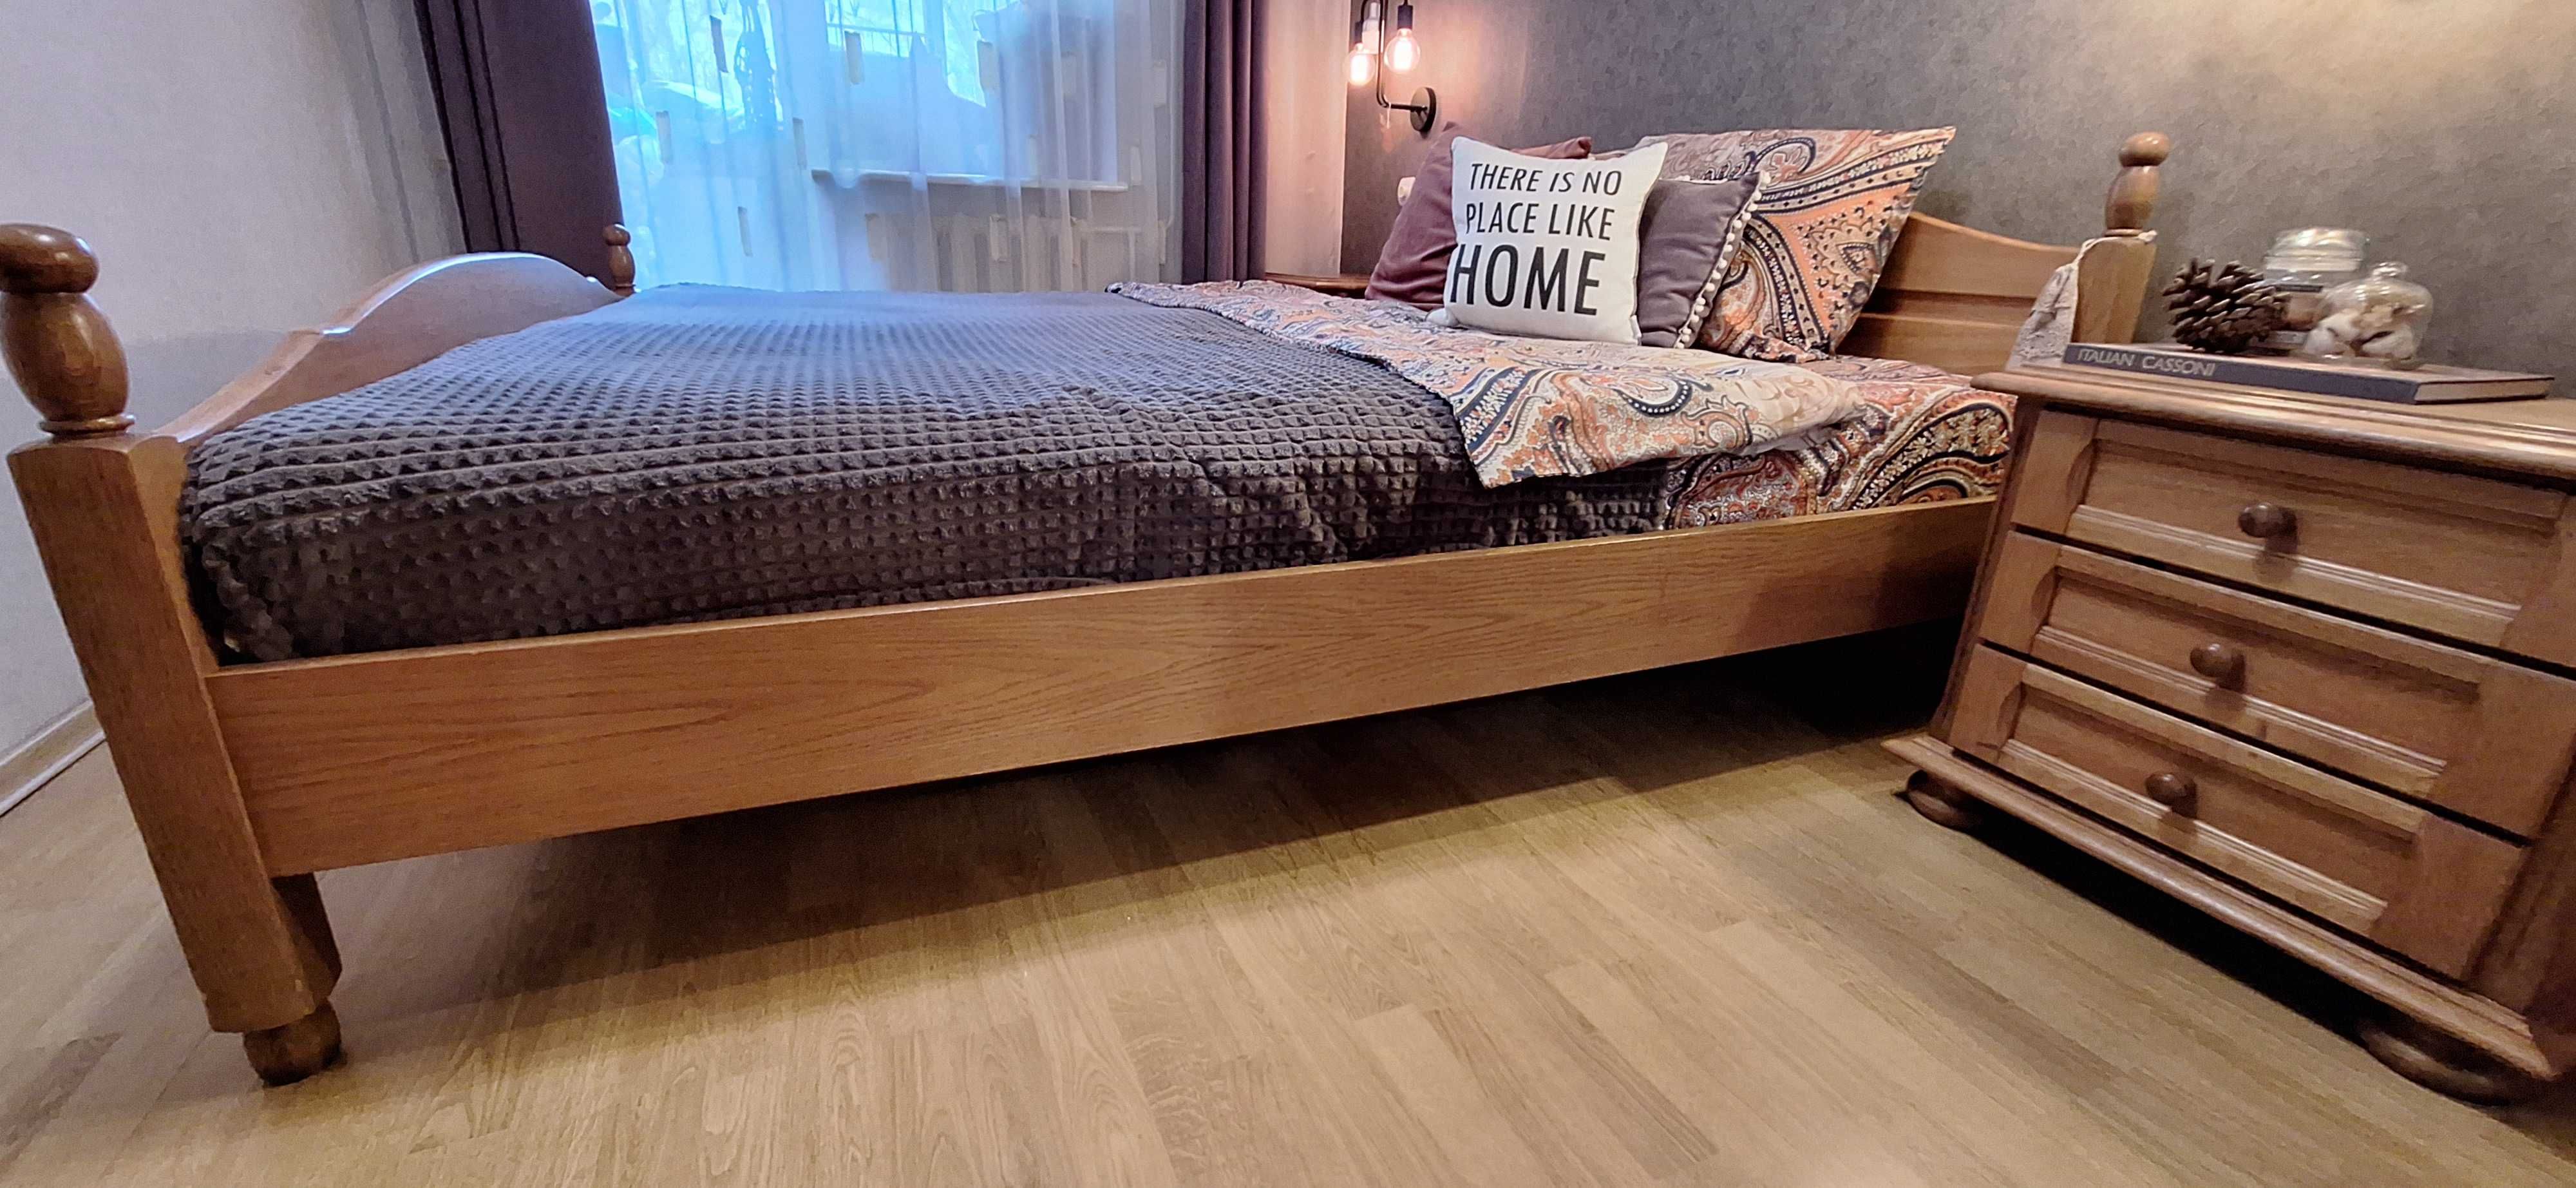 Ліжко виробництва Румунії